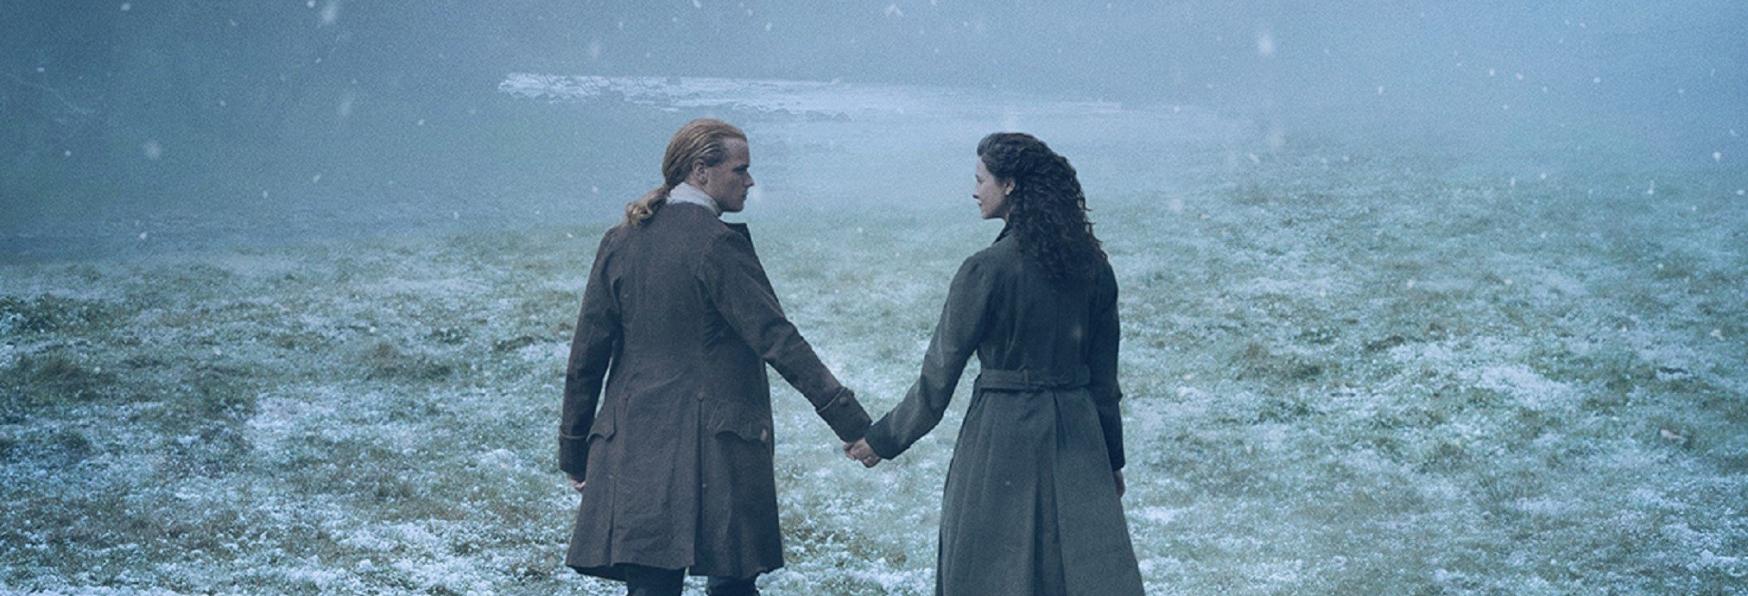 Outlander 6x01: Recensione del Primo Episodio della nuova Stagione, "Echoes"